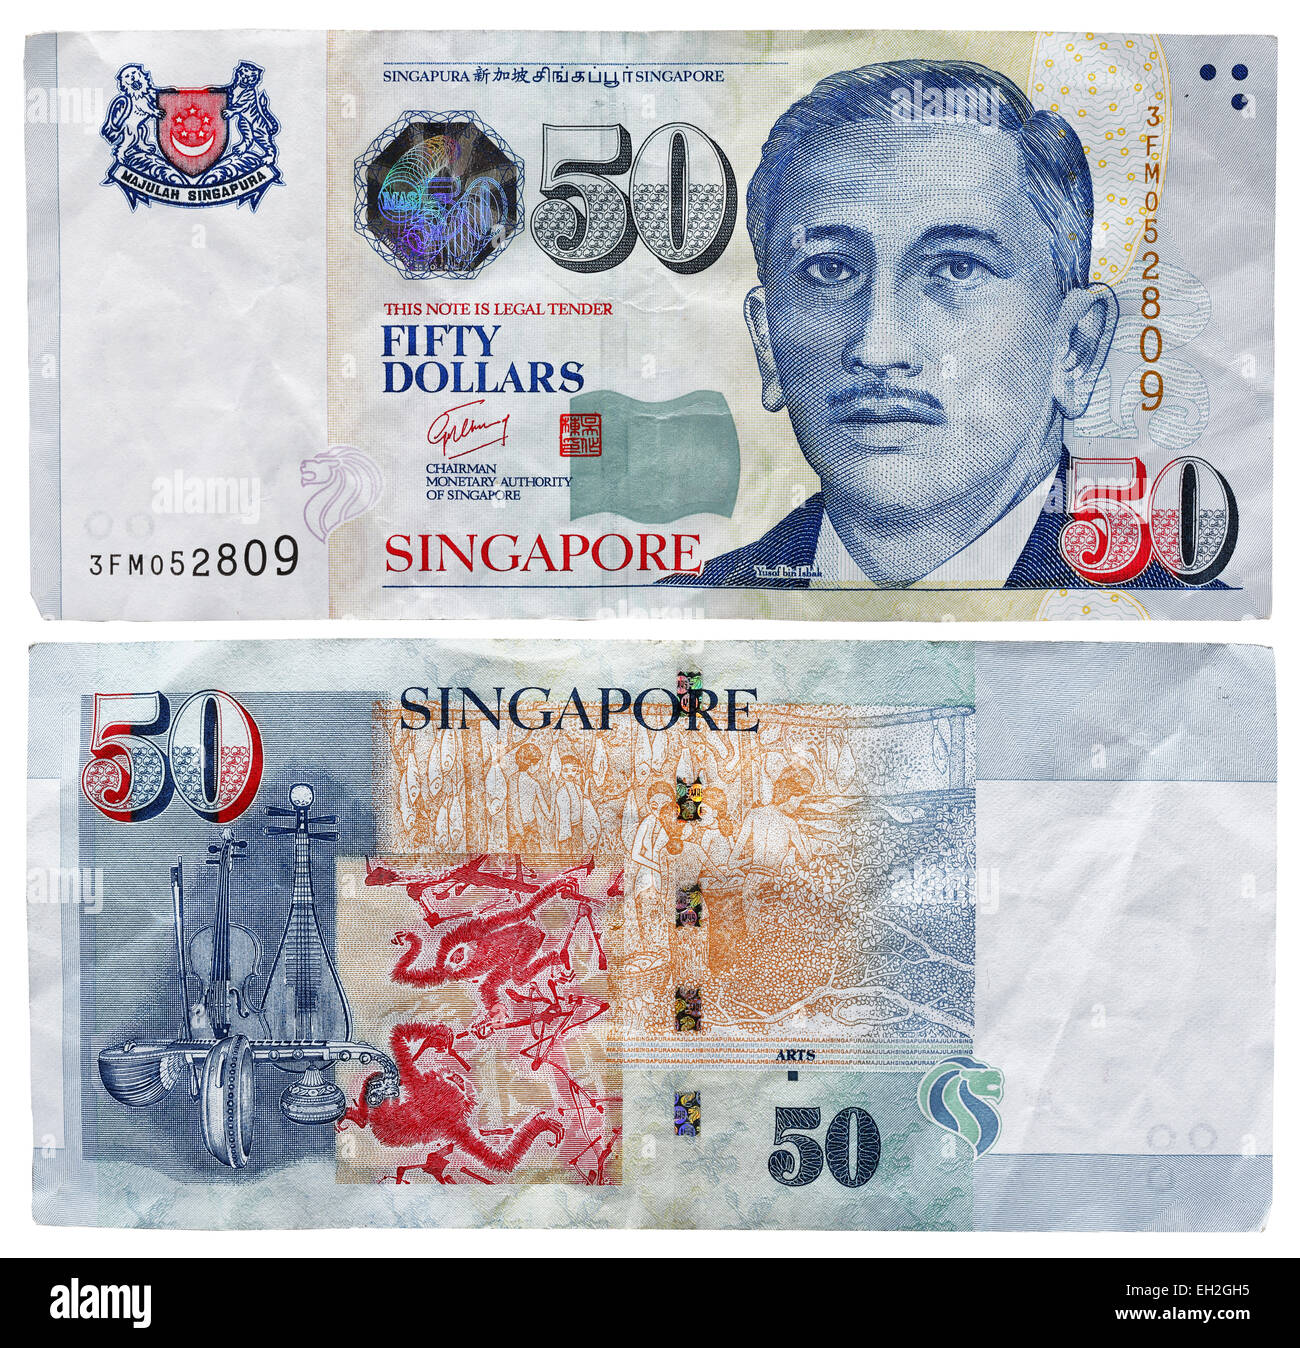 Billet de 50 dollars, président Yusof bin Ishak, Arts, Singapour, 2008 Banque D'Images